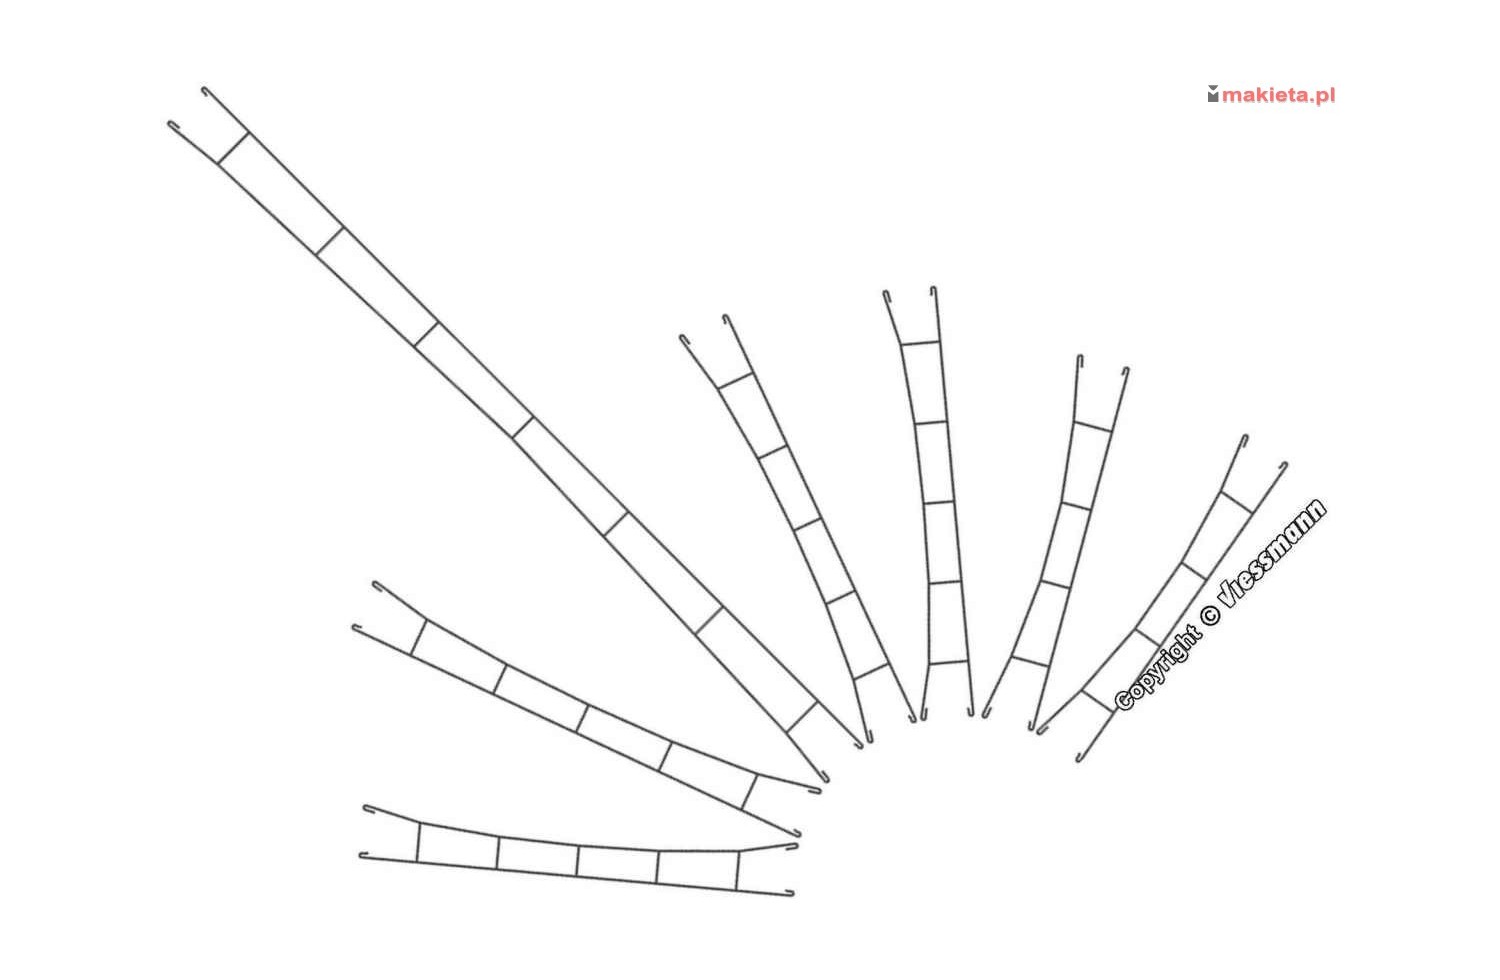 Viessmann 4340. Przewody sieci trakcyjnej, komplet, 5 sztuk x 135,5 mm, Ø 0,4 mm, skala N 1:160